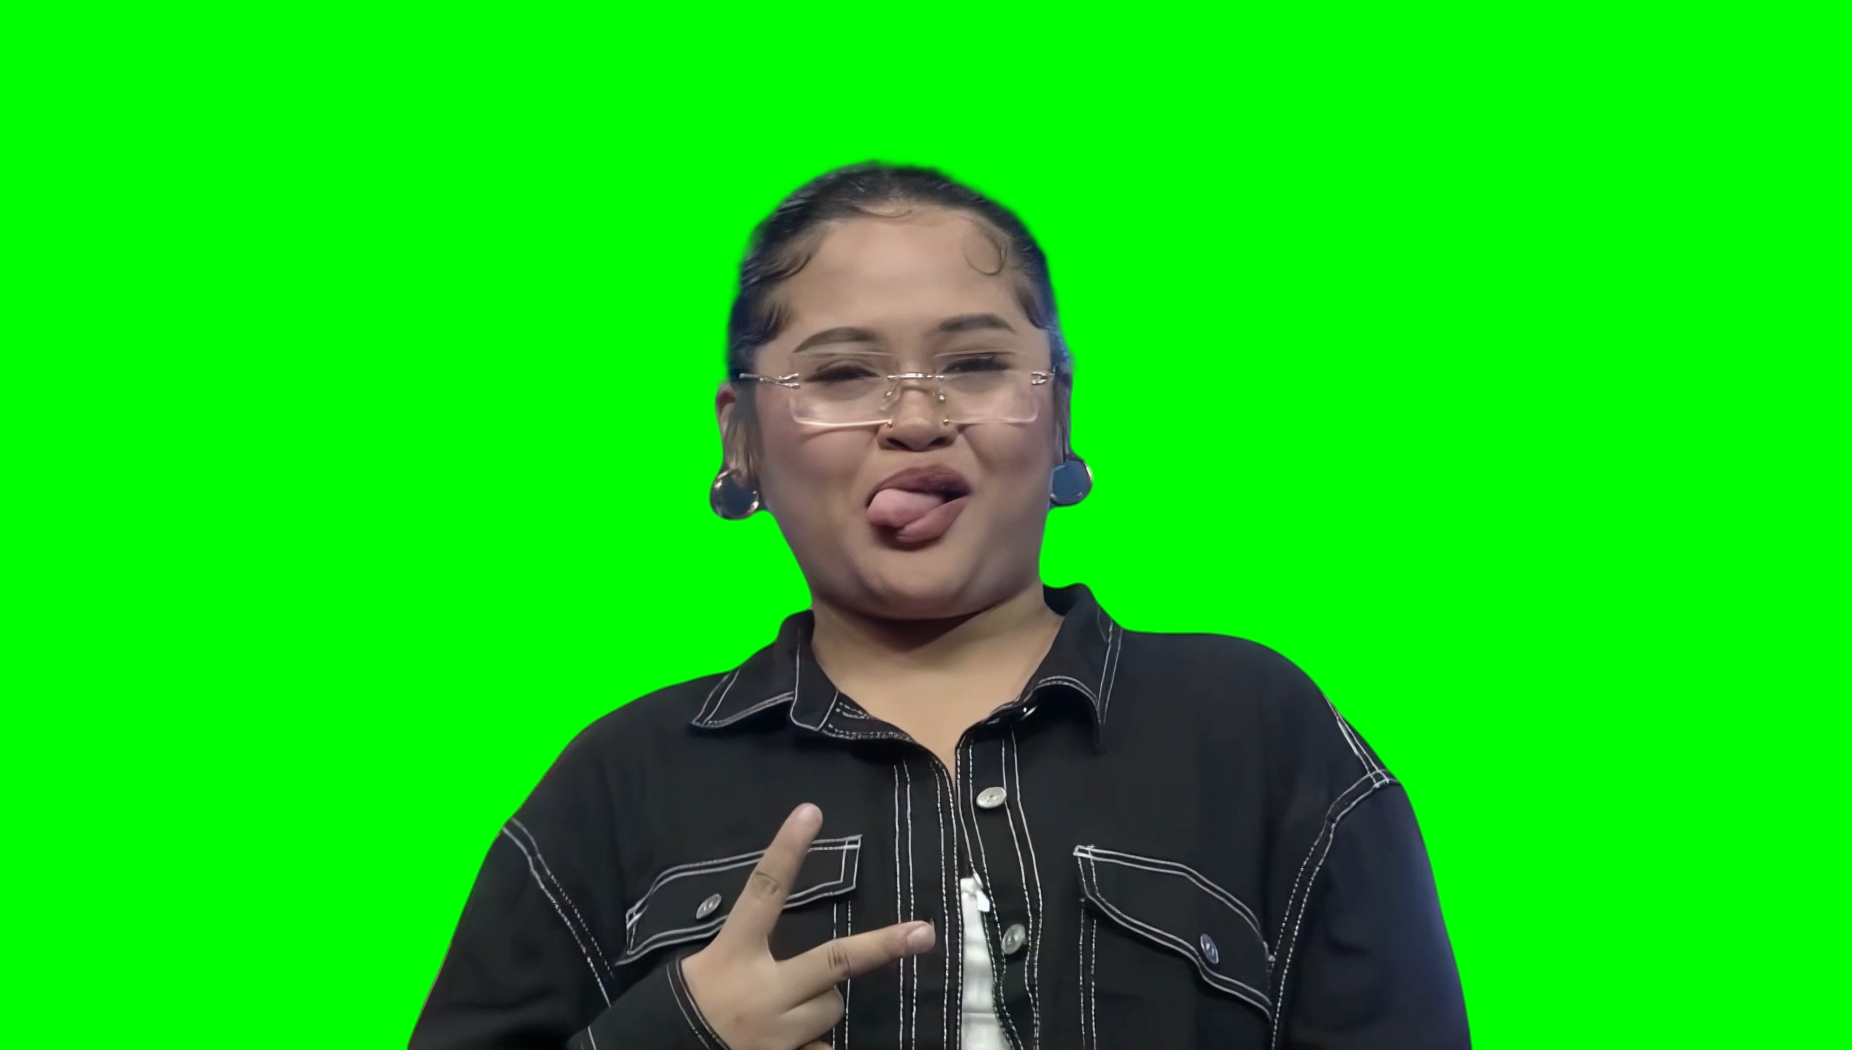 Filipino Girl crying then smiling meme - It's Showtime (Green Screen)